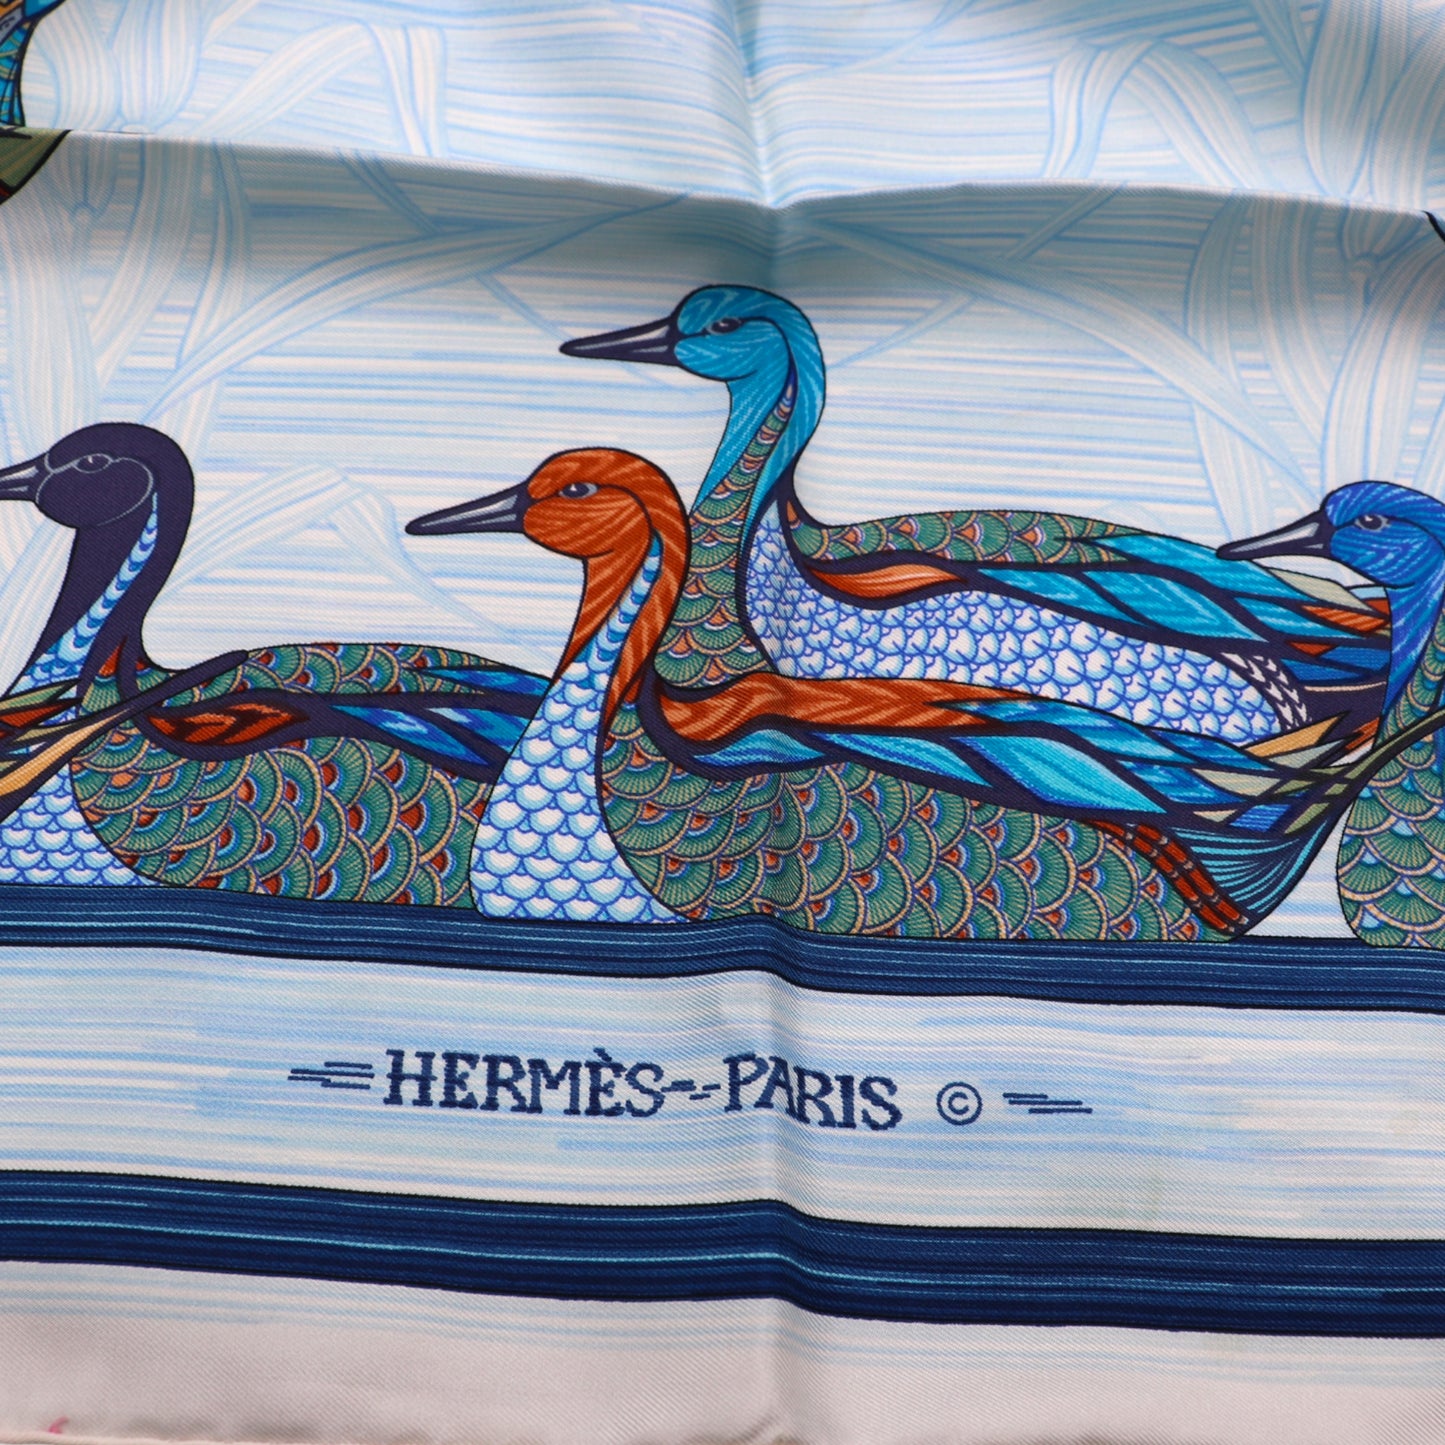 Hermès Carré "La Mare aux canards"